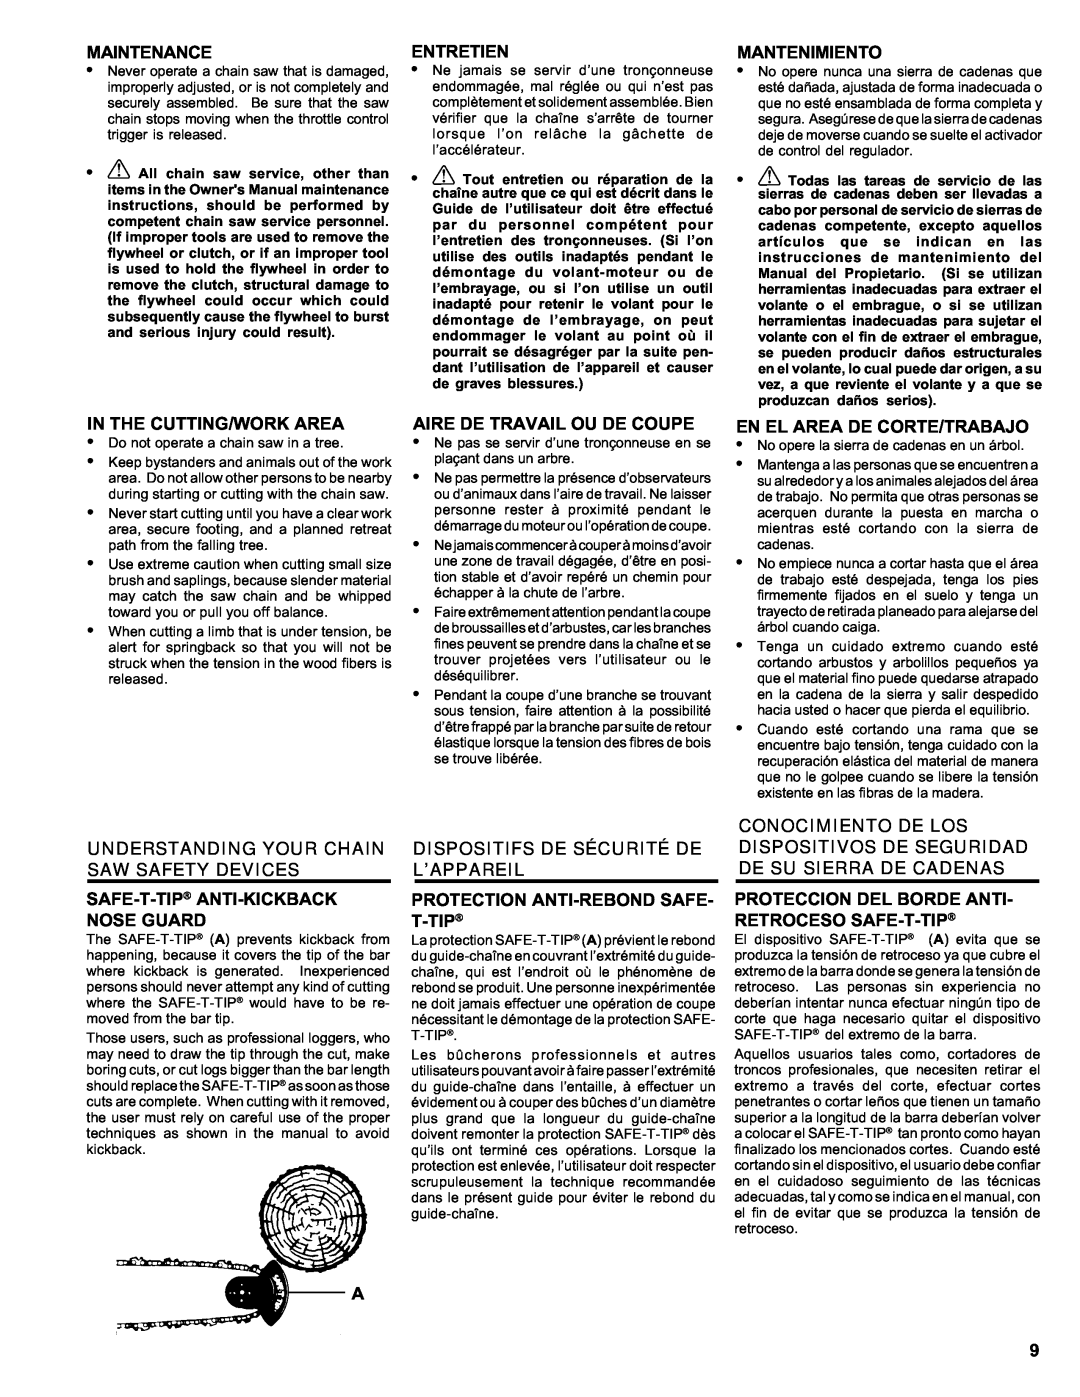 Homelite ut 10910 manual Understanding Your Chain Saw Safety Devices, Dispositifs De Sécurité De L’Appareil 